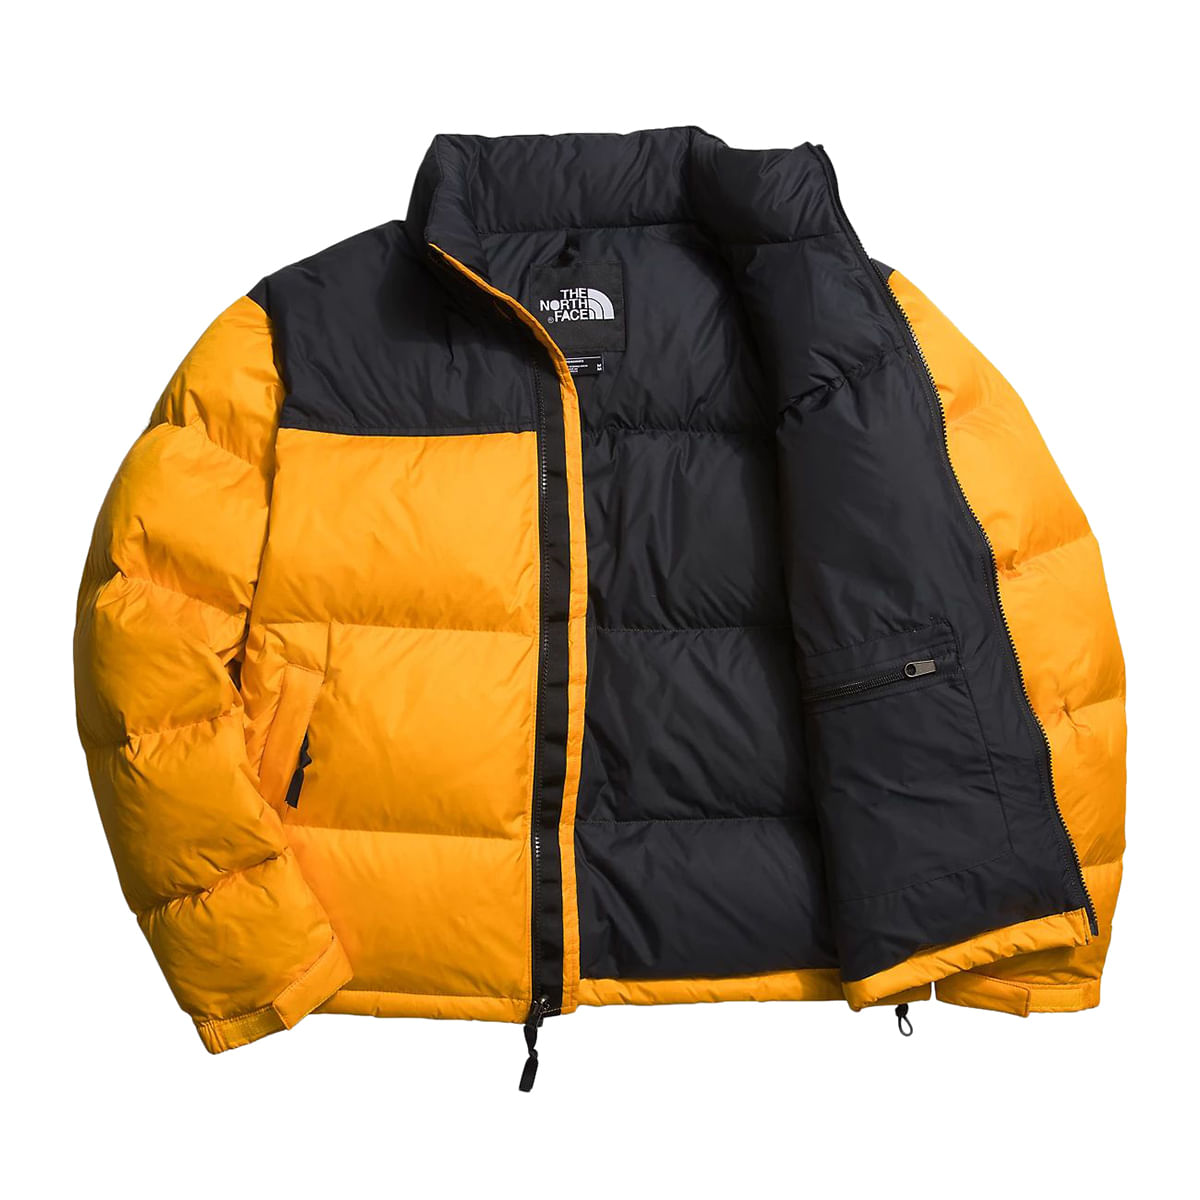 The North Face – 1996 Retro Nuptse Jacket Black